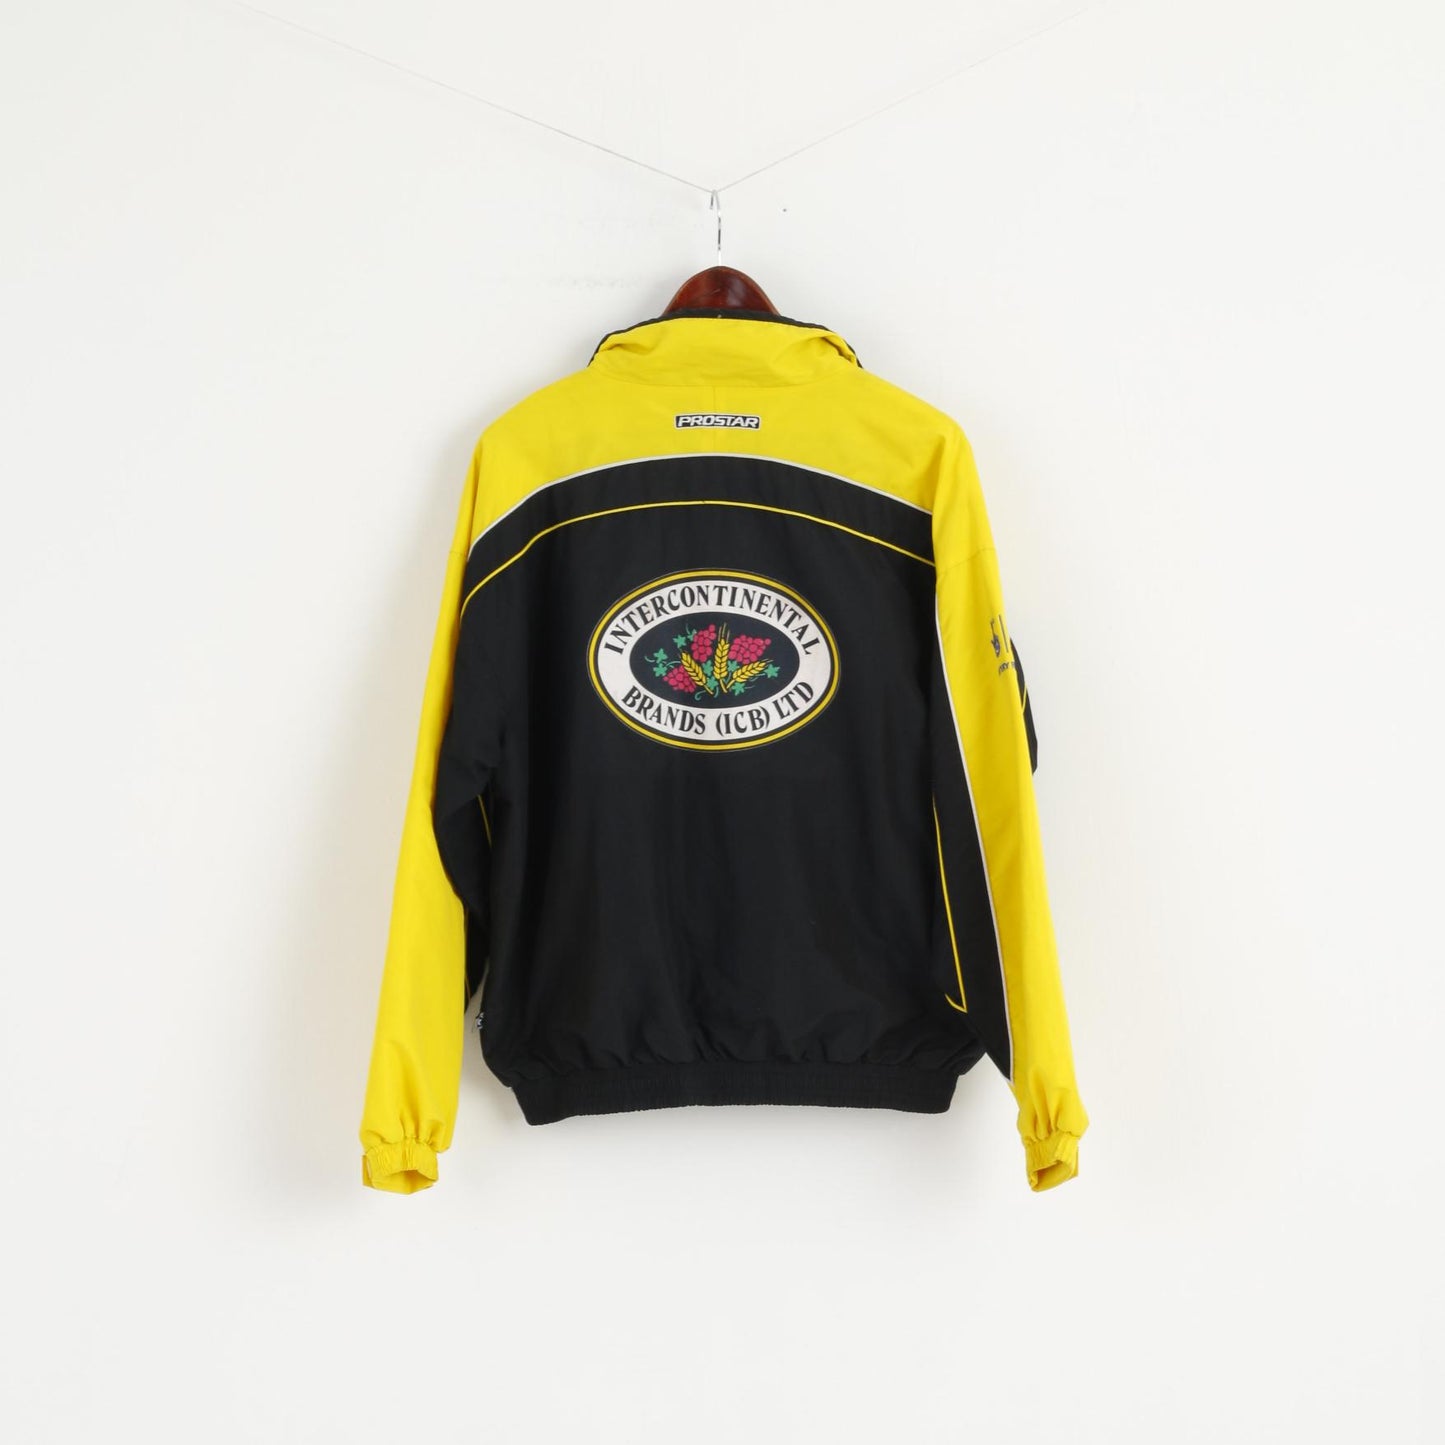 Prostar Women S 34/36 Jacket Yellow Full Zipper Cheerleaders RAMS Unisex Top